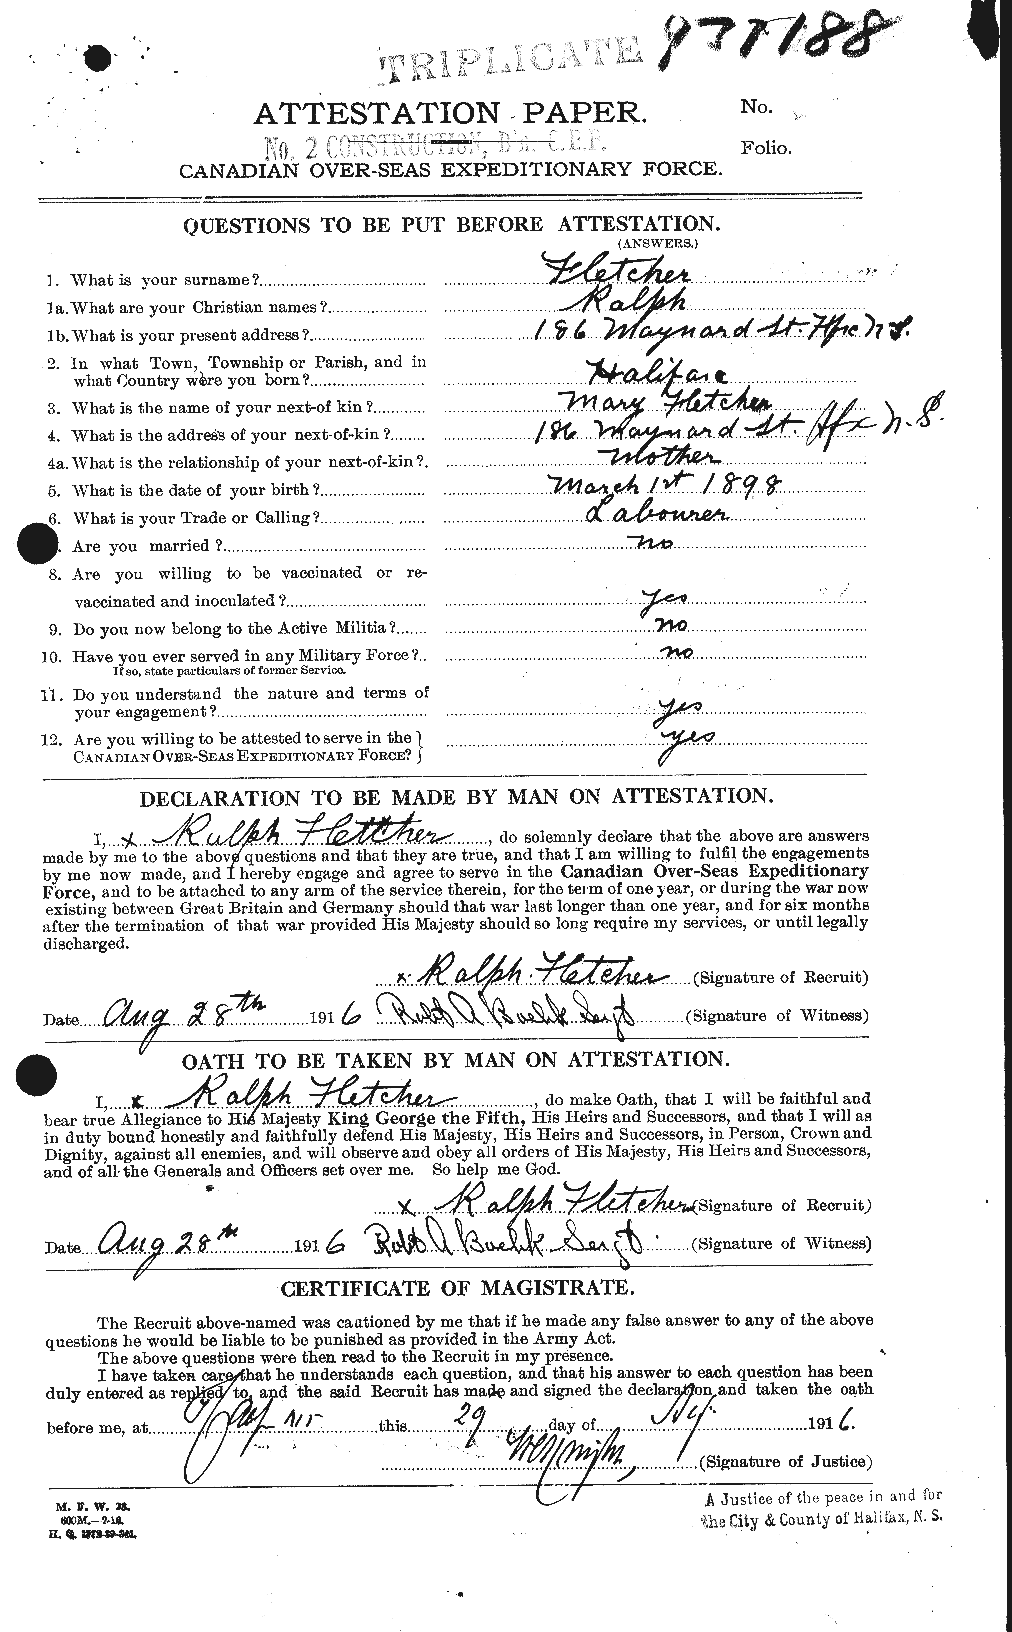 Dossiers du Personnel de la Première Guerre mondiale - CEC 329029a